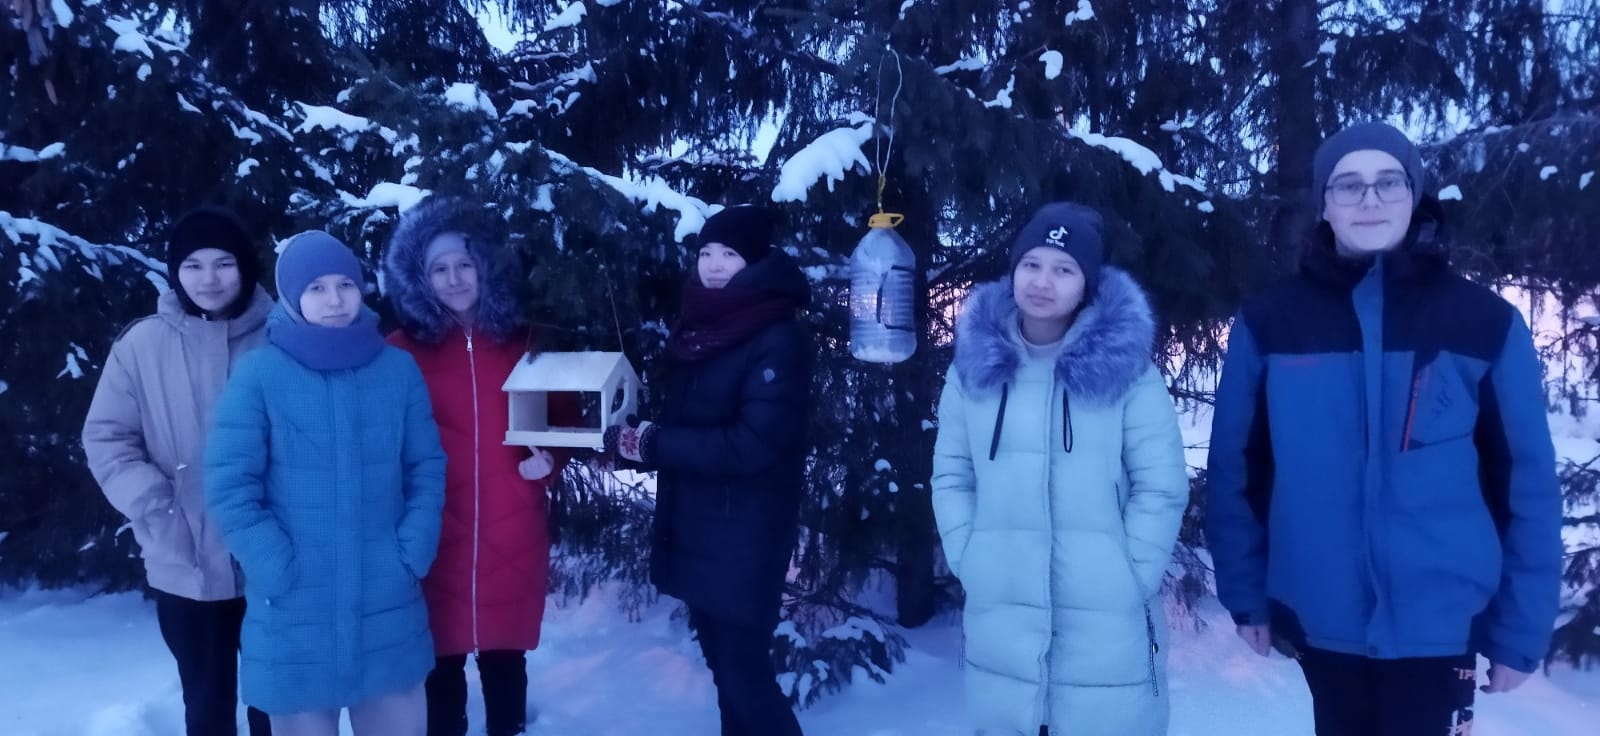 Покормите птиц зимой: Башкирская гимназия с. Мраково присоединилась к акции по подкормке птиц